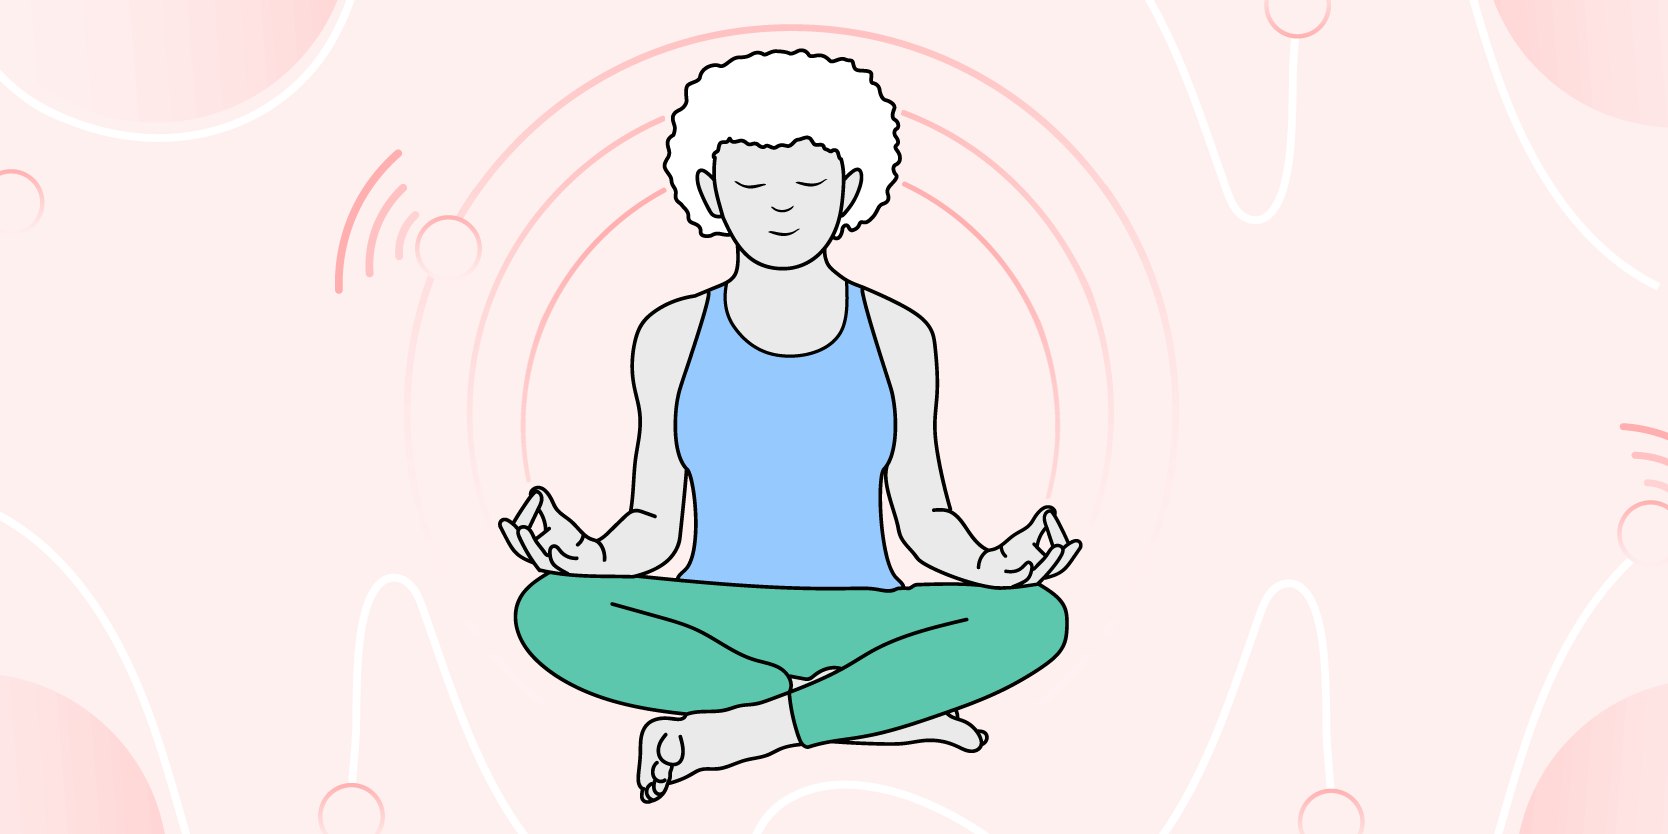 Beginner's Body Scan Meditation - Mindful